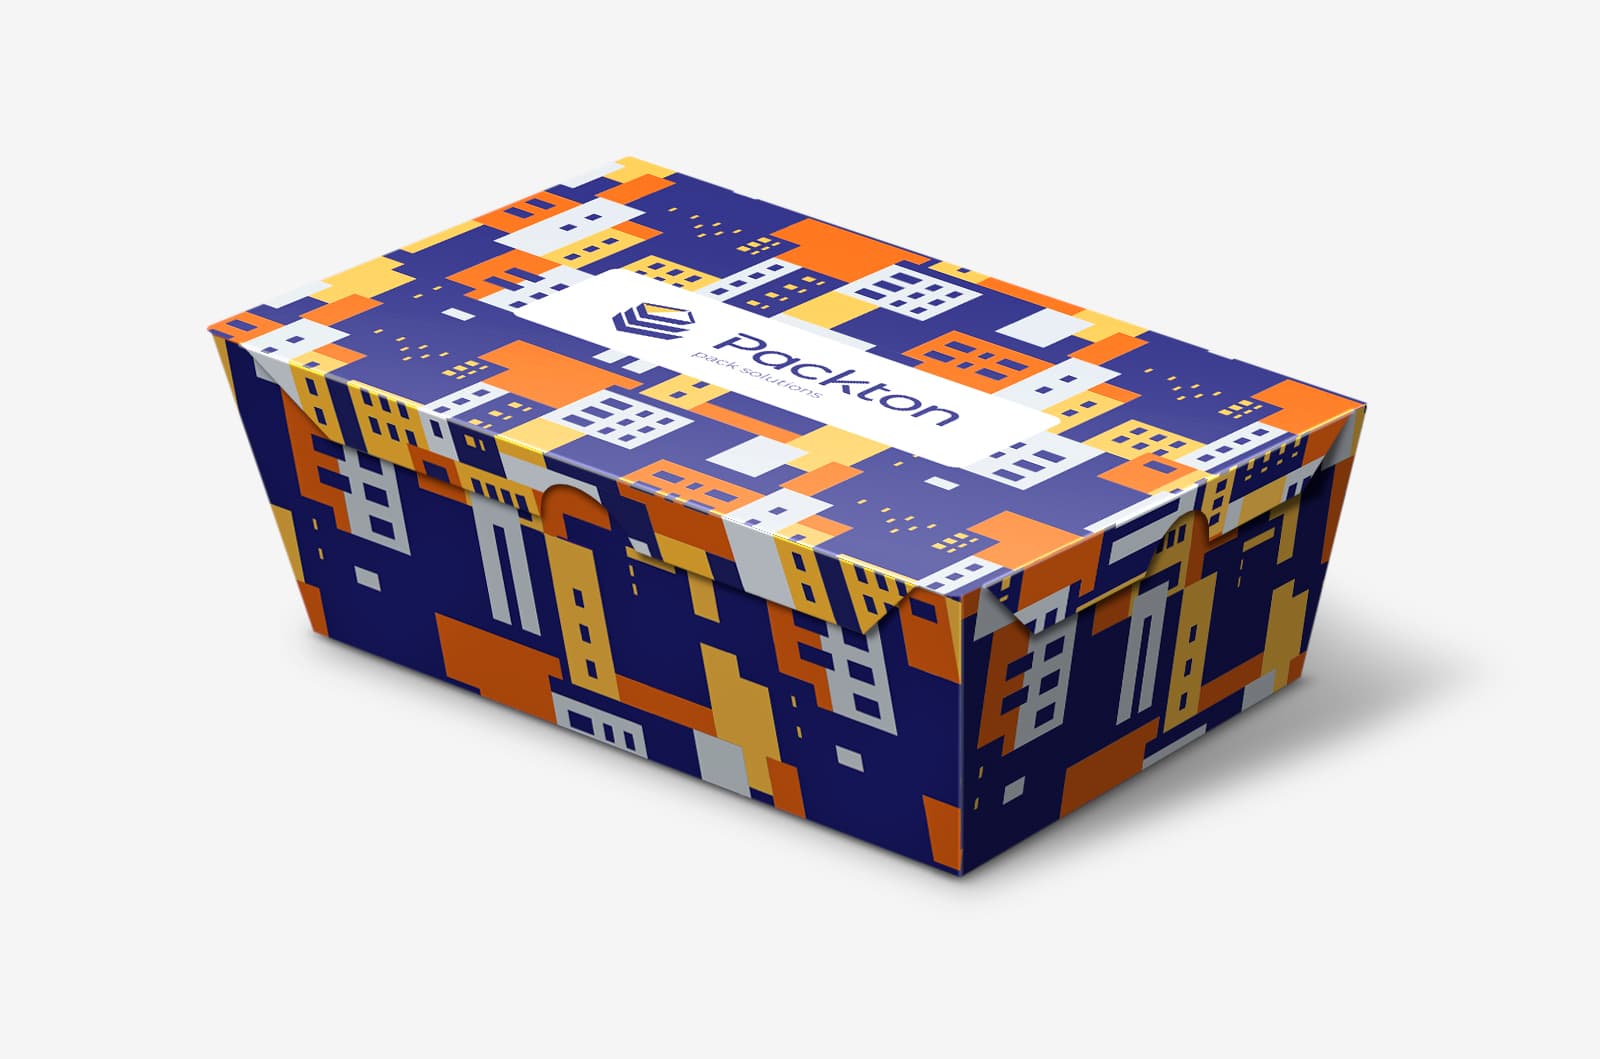 Дизайн серии фирменных упаковок для городских доставок компании Packton